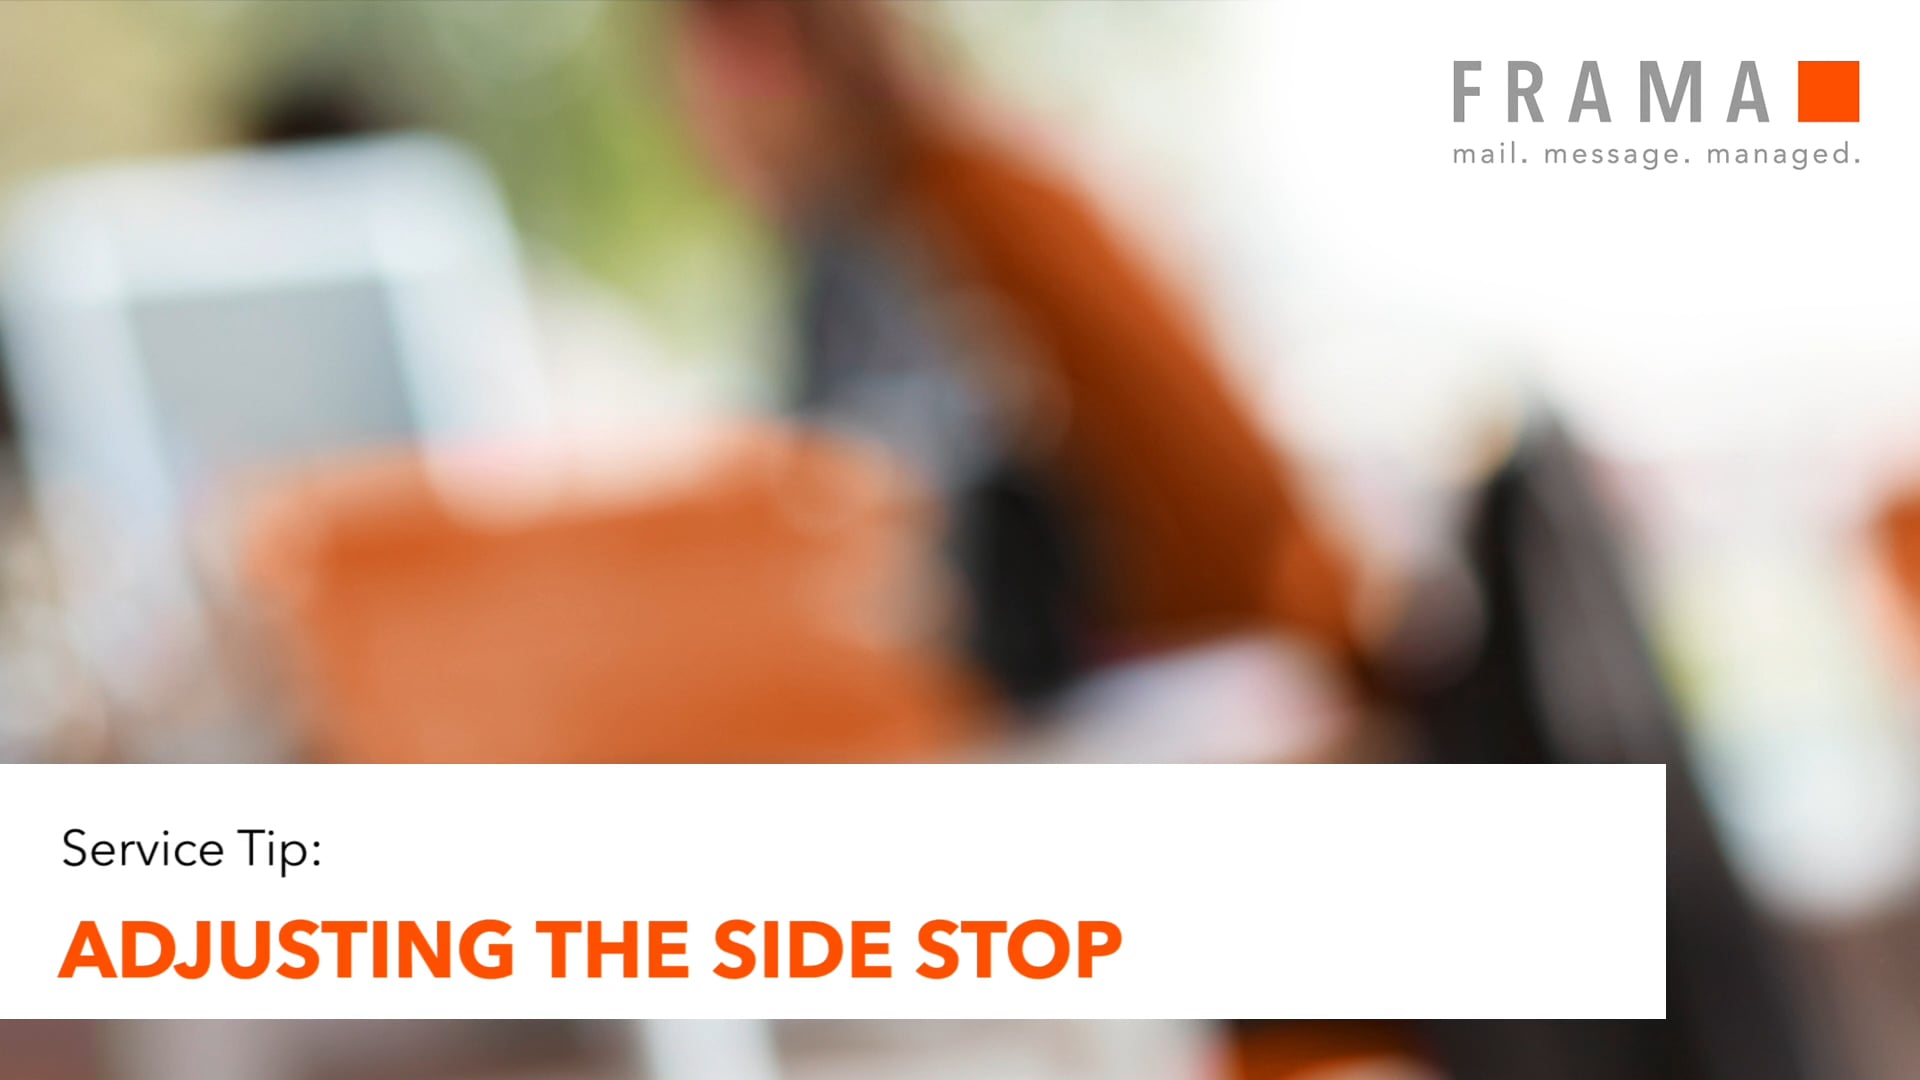 Frama Service Tip: Adjusting the side stop